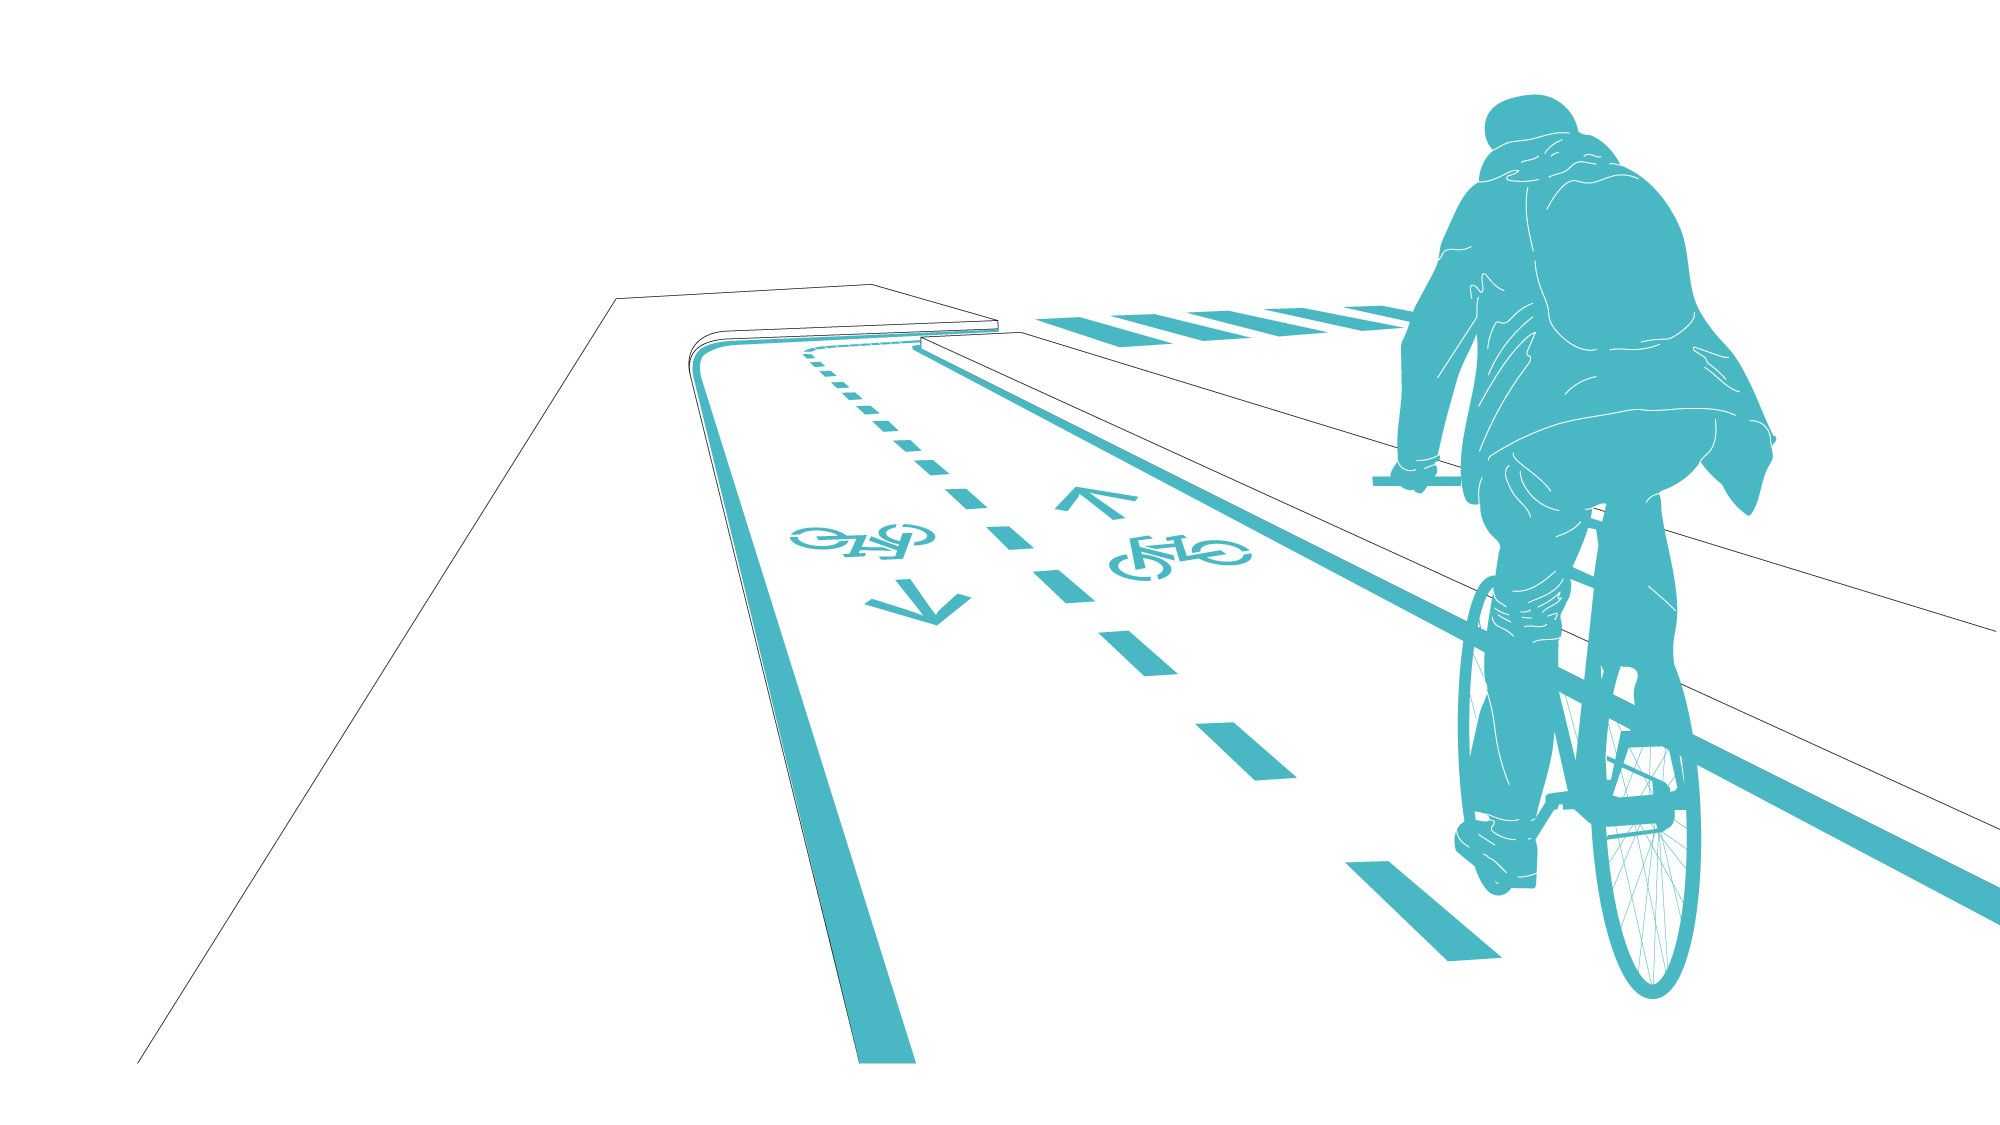 Aunque las líneas guías en piso pueden ser un buen complemento para demarcar áreas seguras o senderos y facilitan el tránsito entre usuarios de medios de transporte y peatones, sin embargo, su visibilidad depende en gran medida de la afluencia de transeún